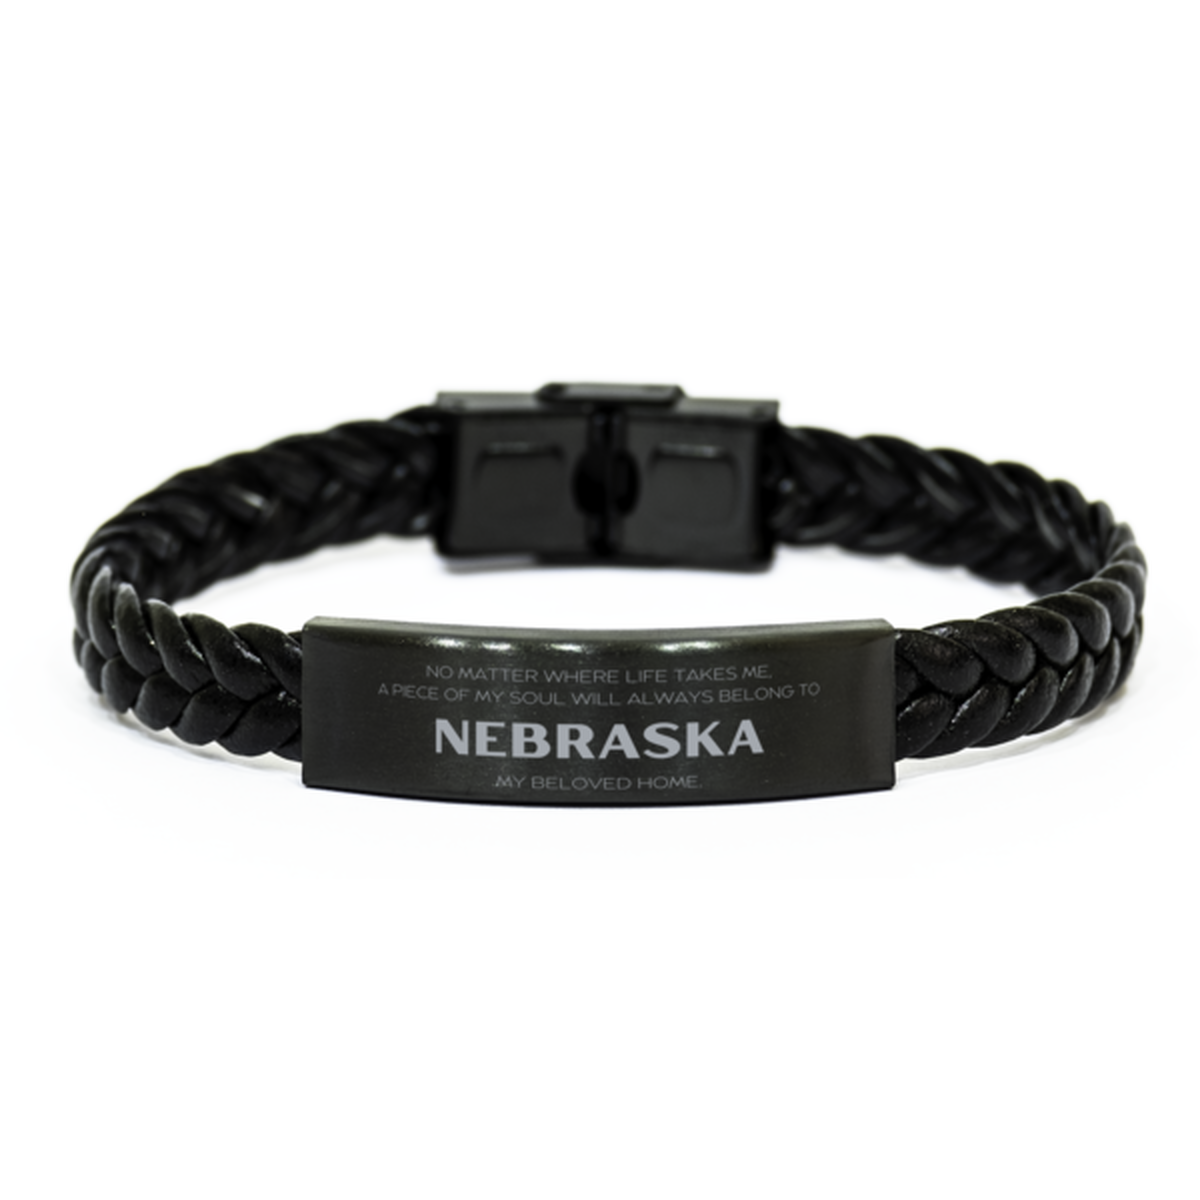 Love Nebraska State Gifts, My soul will always belong to Nebraska, Proud Braided Leather Bracelet, Birthday Unique Gifts For Nebraska Men, Women, Friends